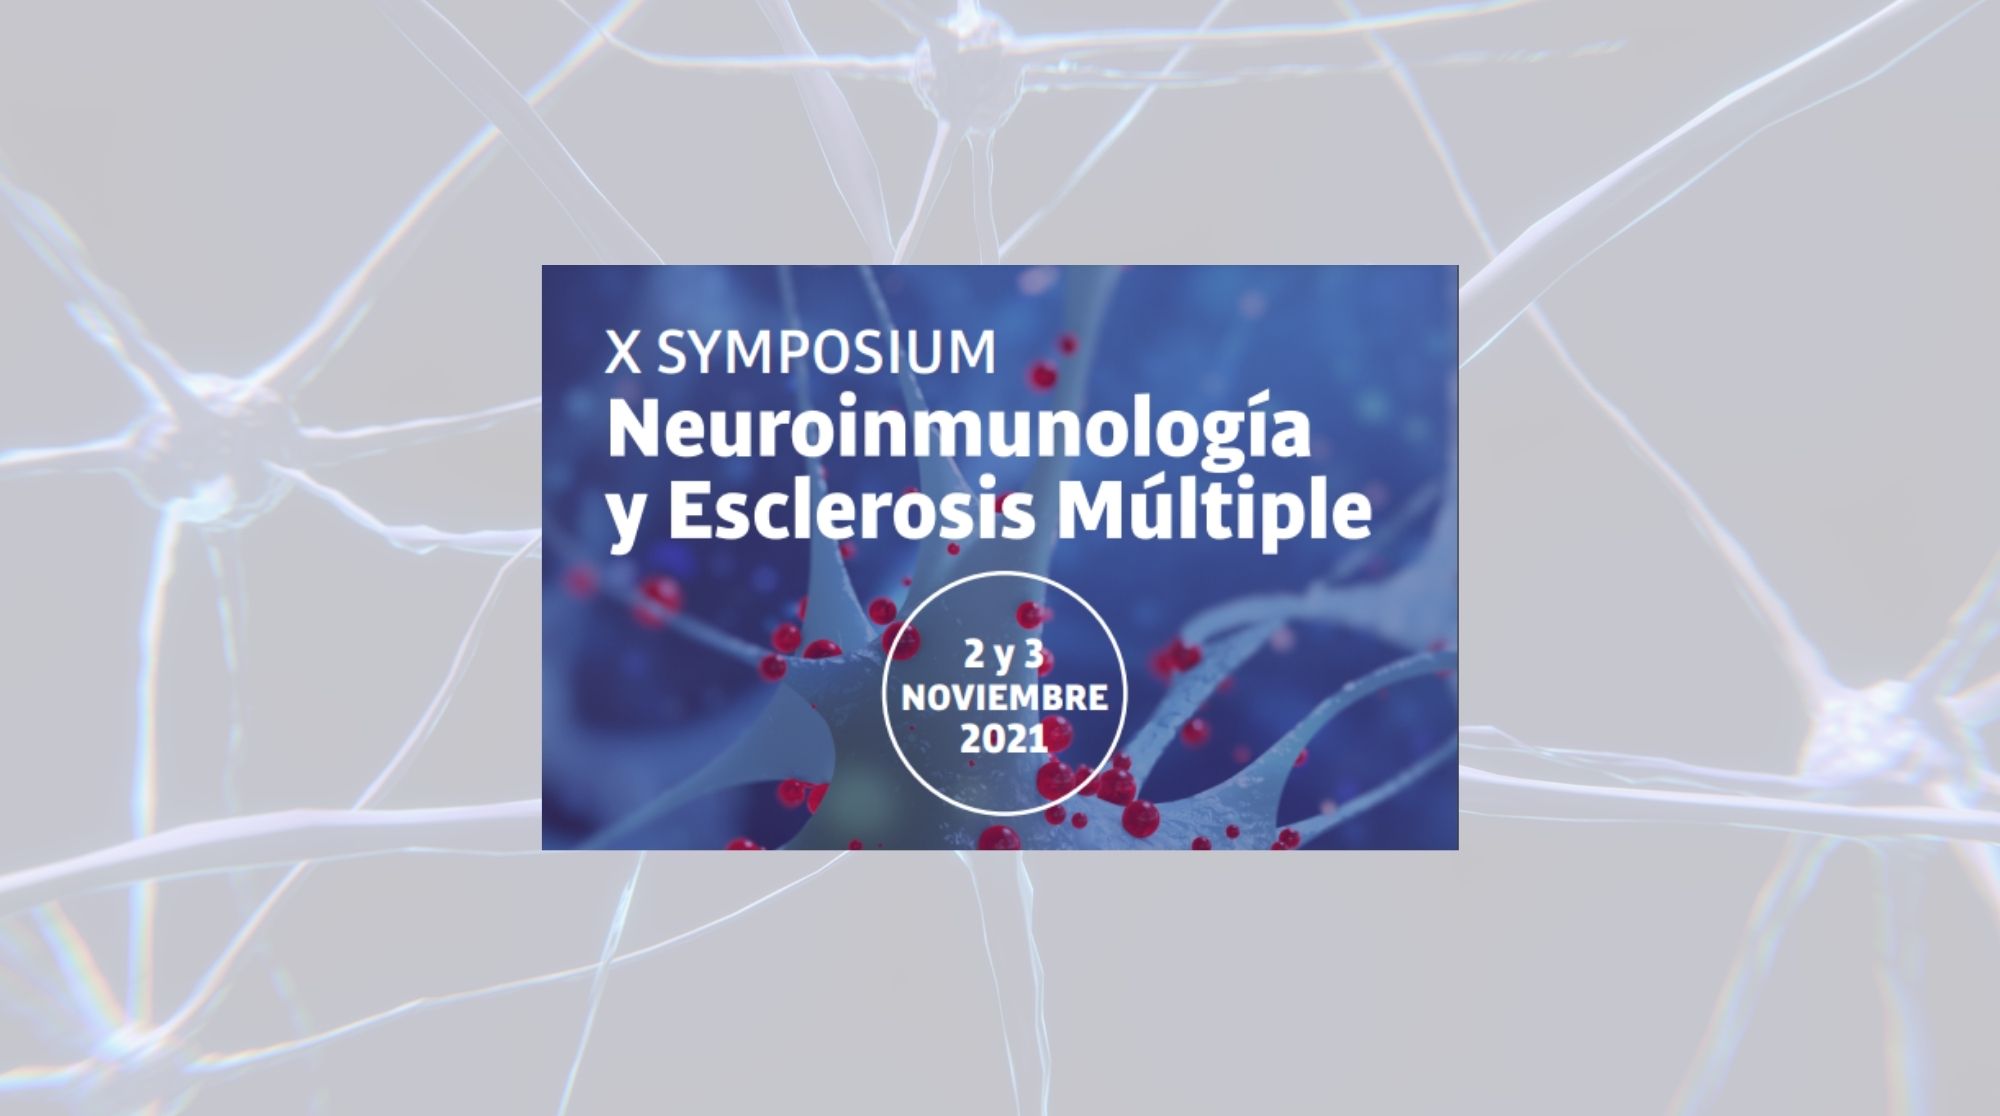 Cartel creado para el X Symposium de Neuroinmunología y Esclerosis Múltiple